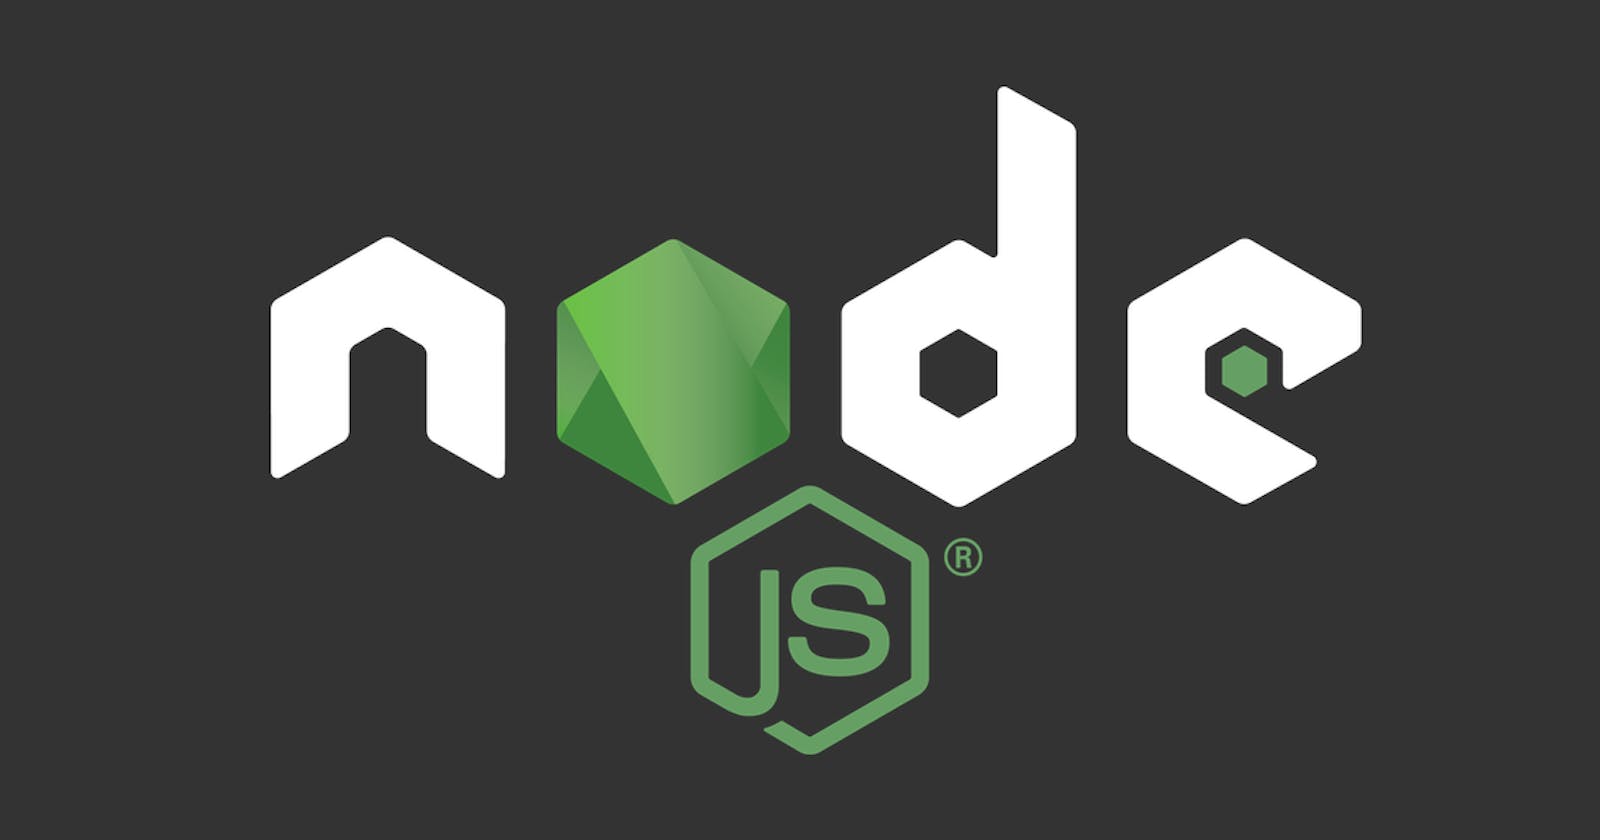 Node.js and Event Loop